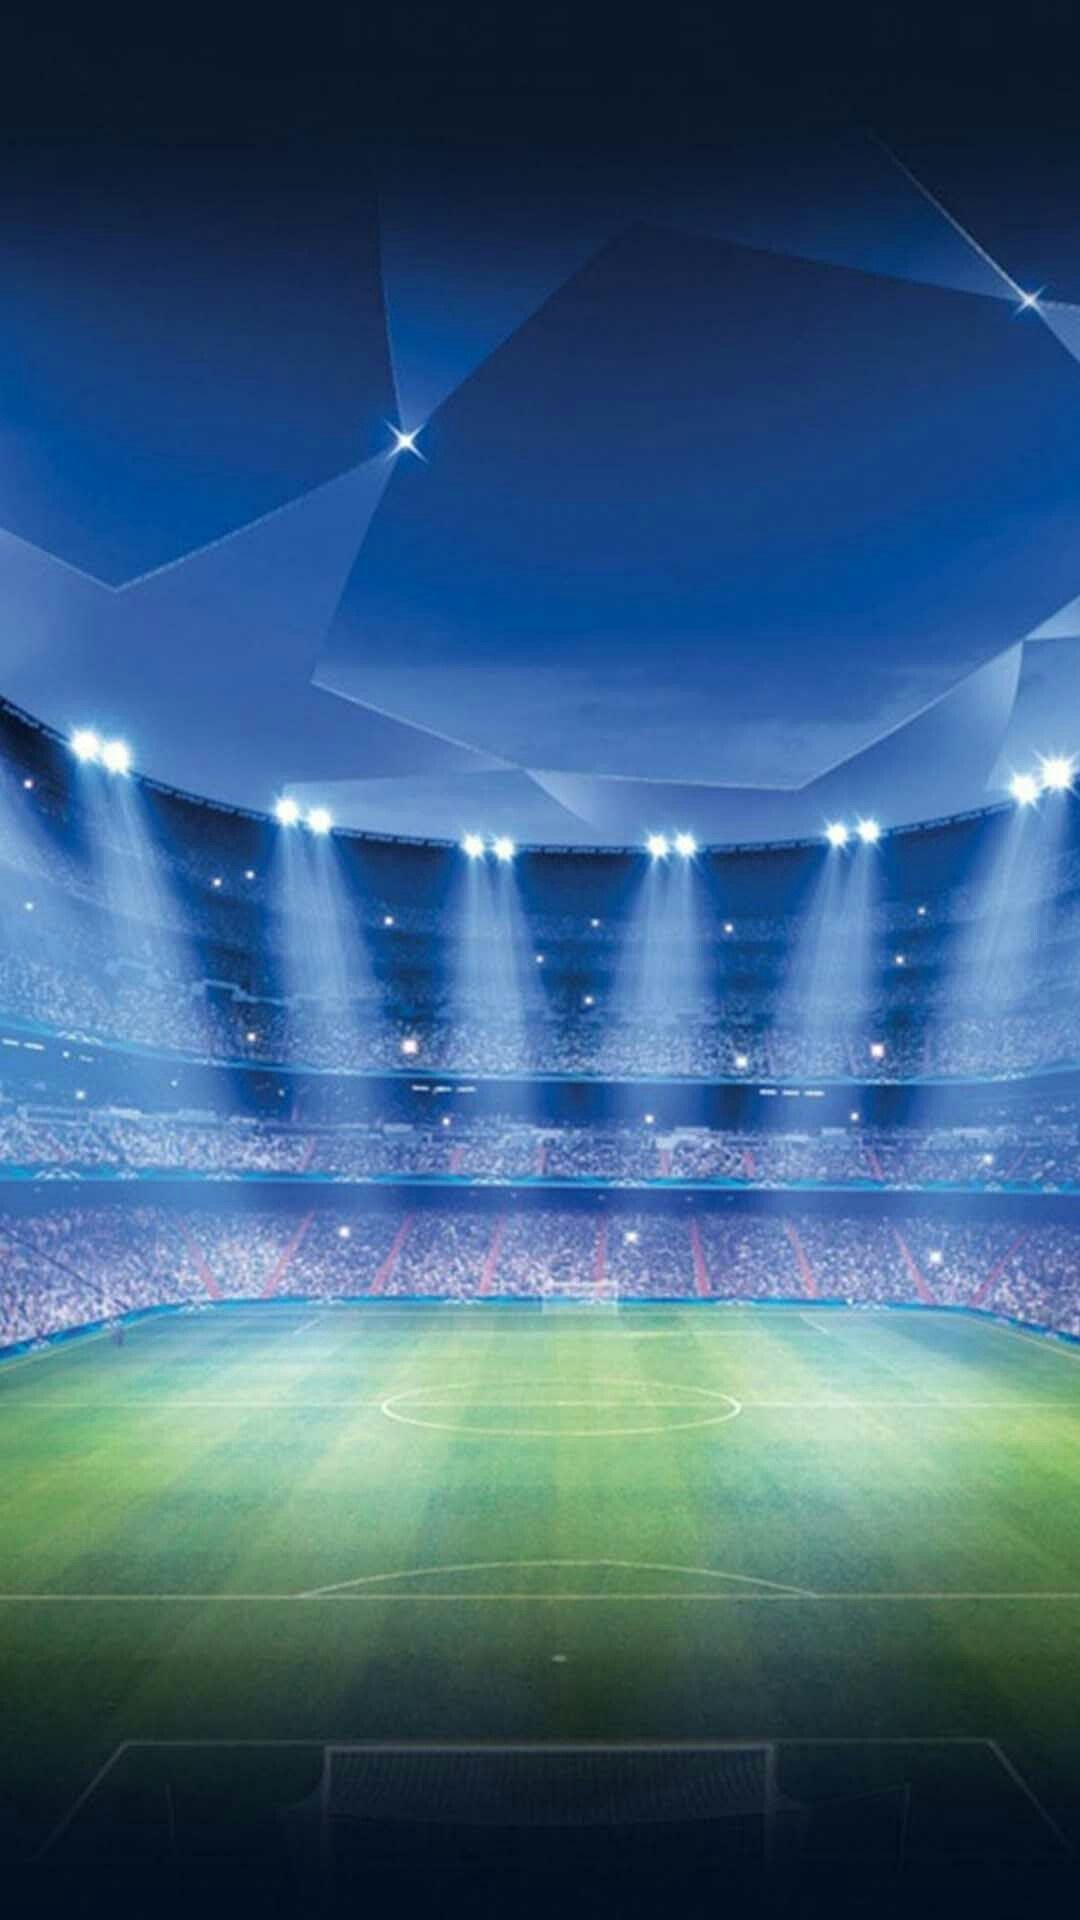 1080x1920 Soccer Stadium Wallpaper | Fondos de pantalla deportes, Fondo de pantalla futbol, Fondos de pantalla real madrid